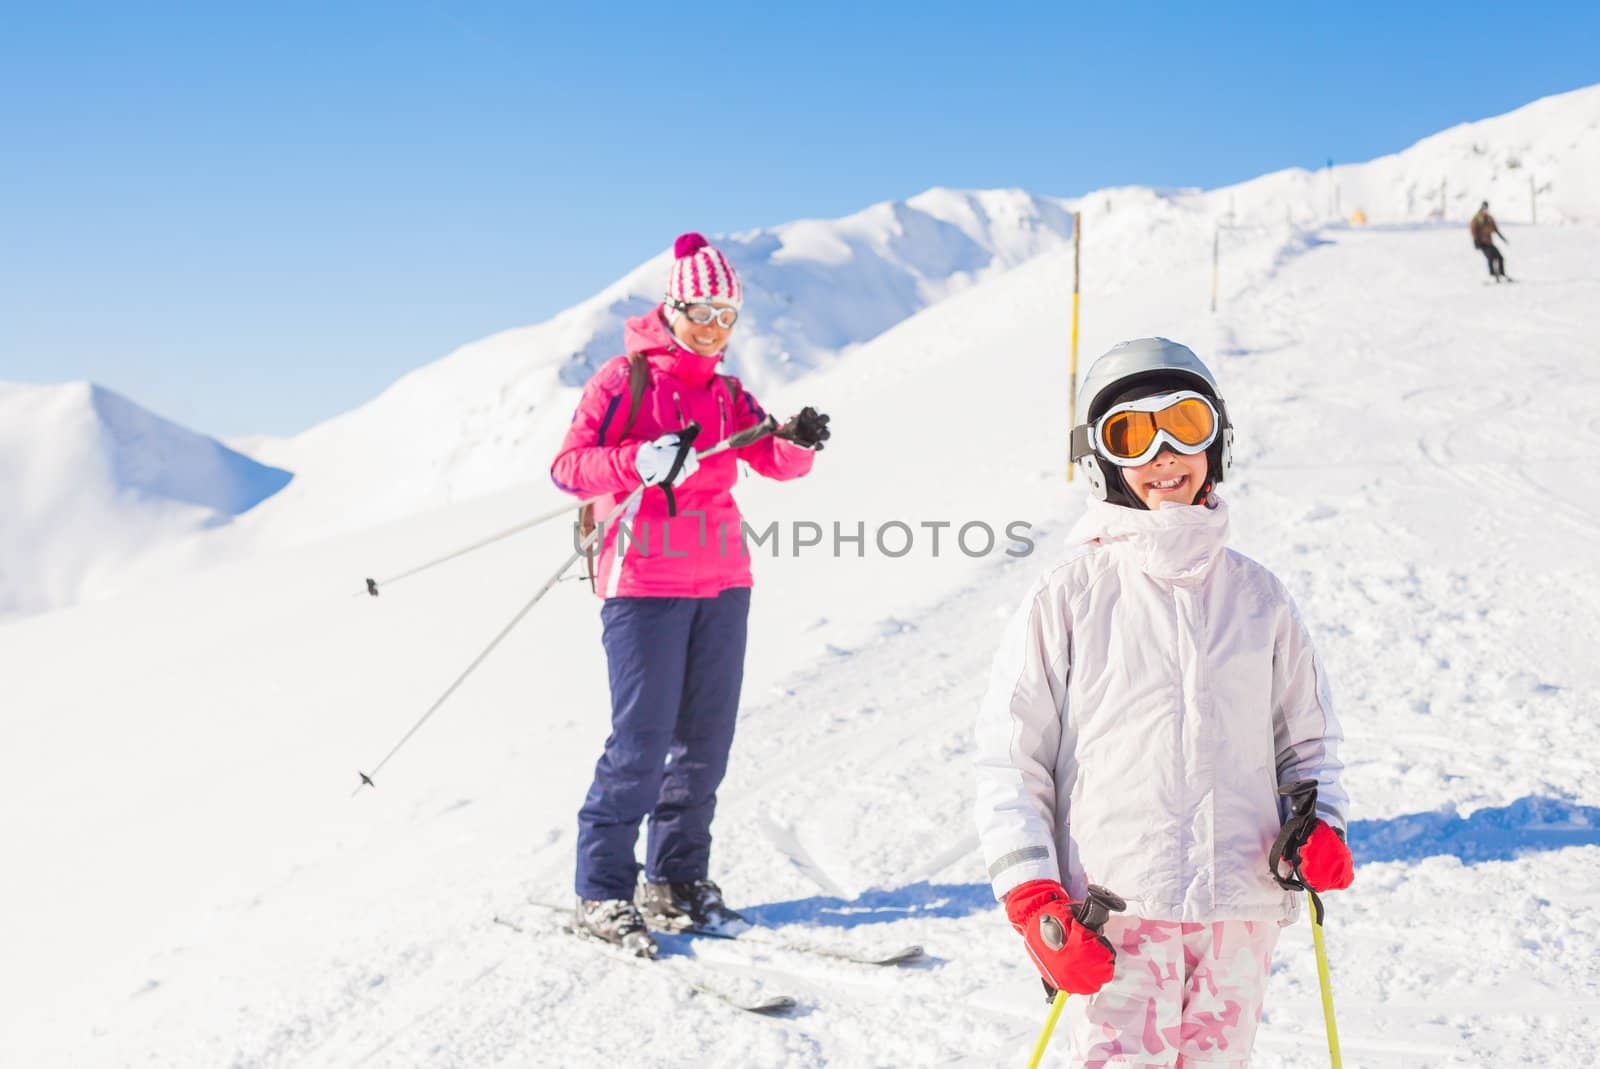 Happy skiers by maxoliki